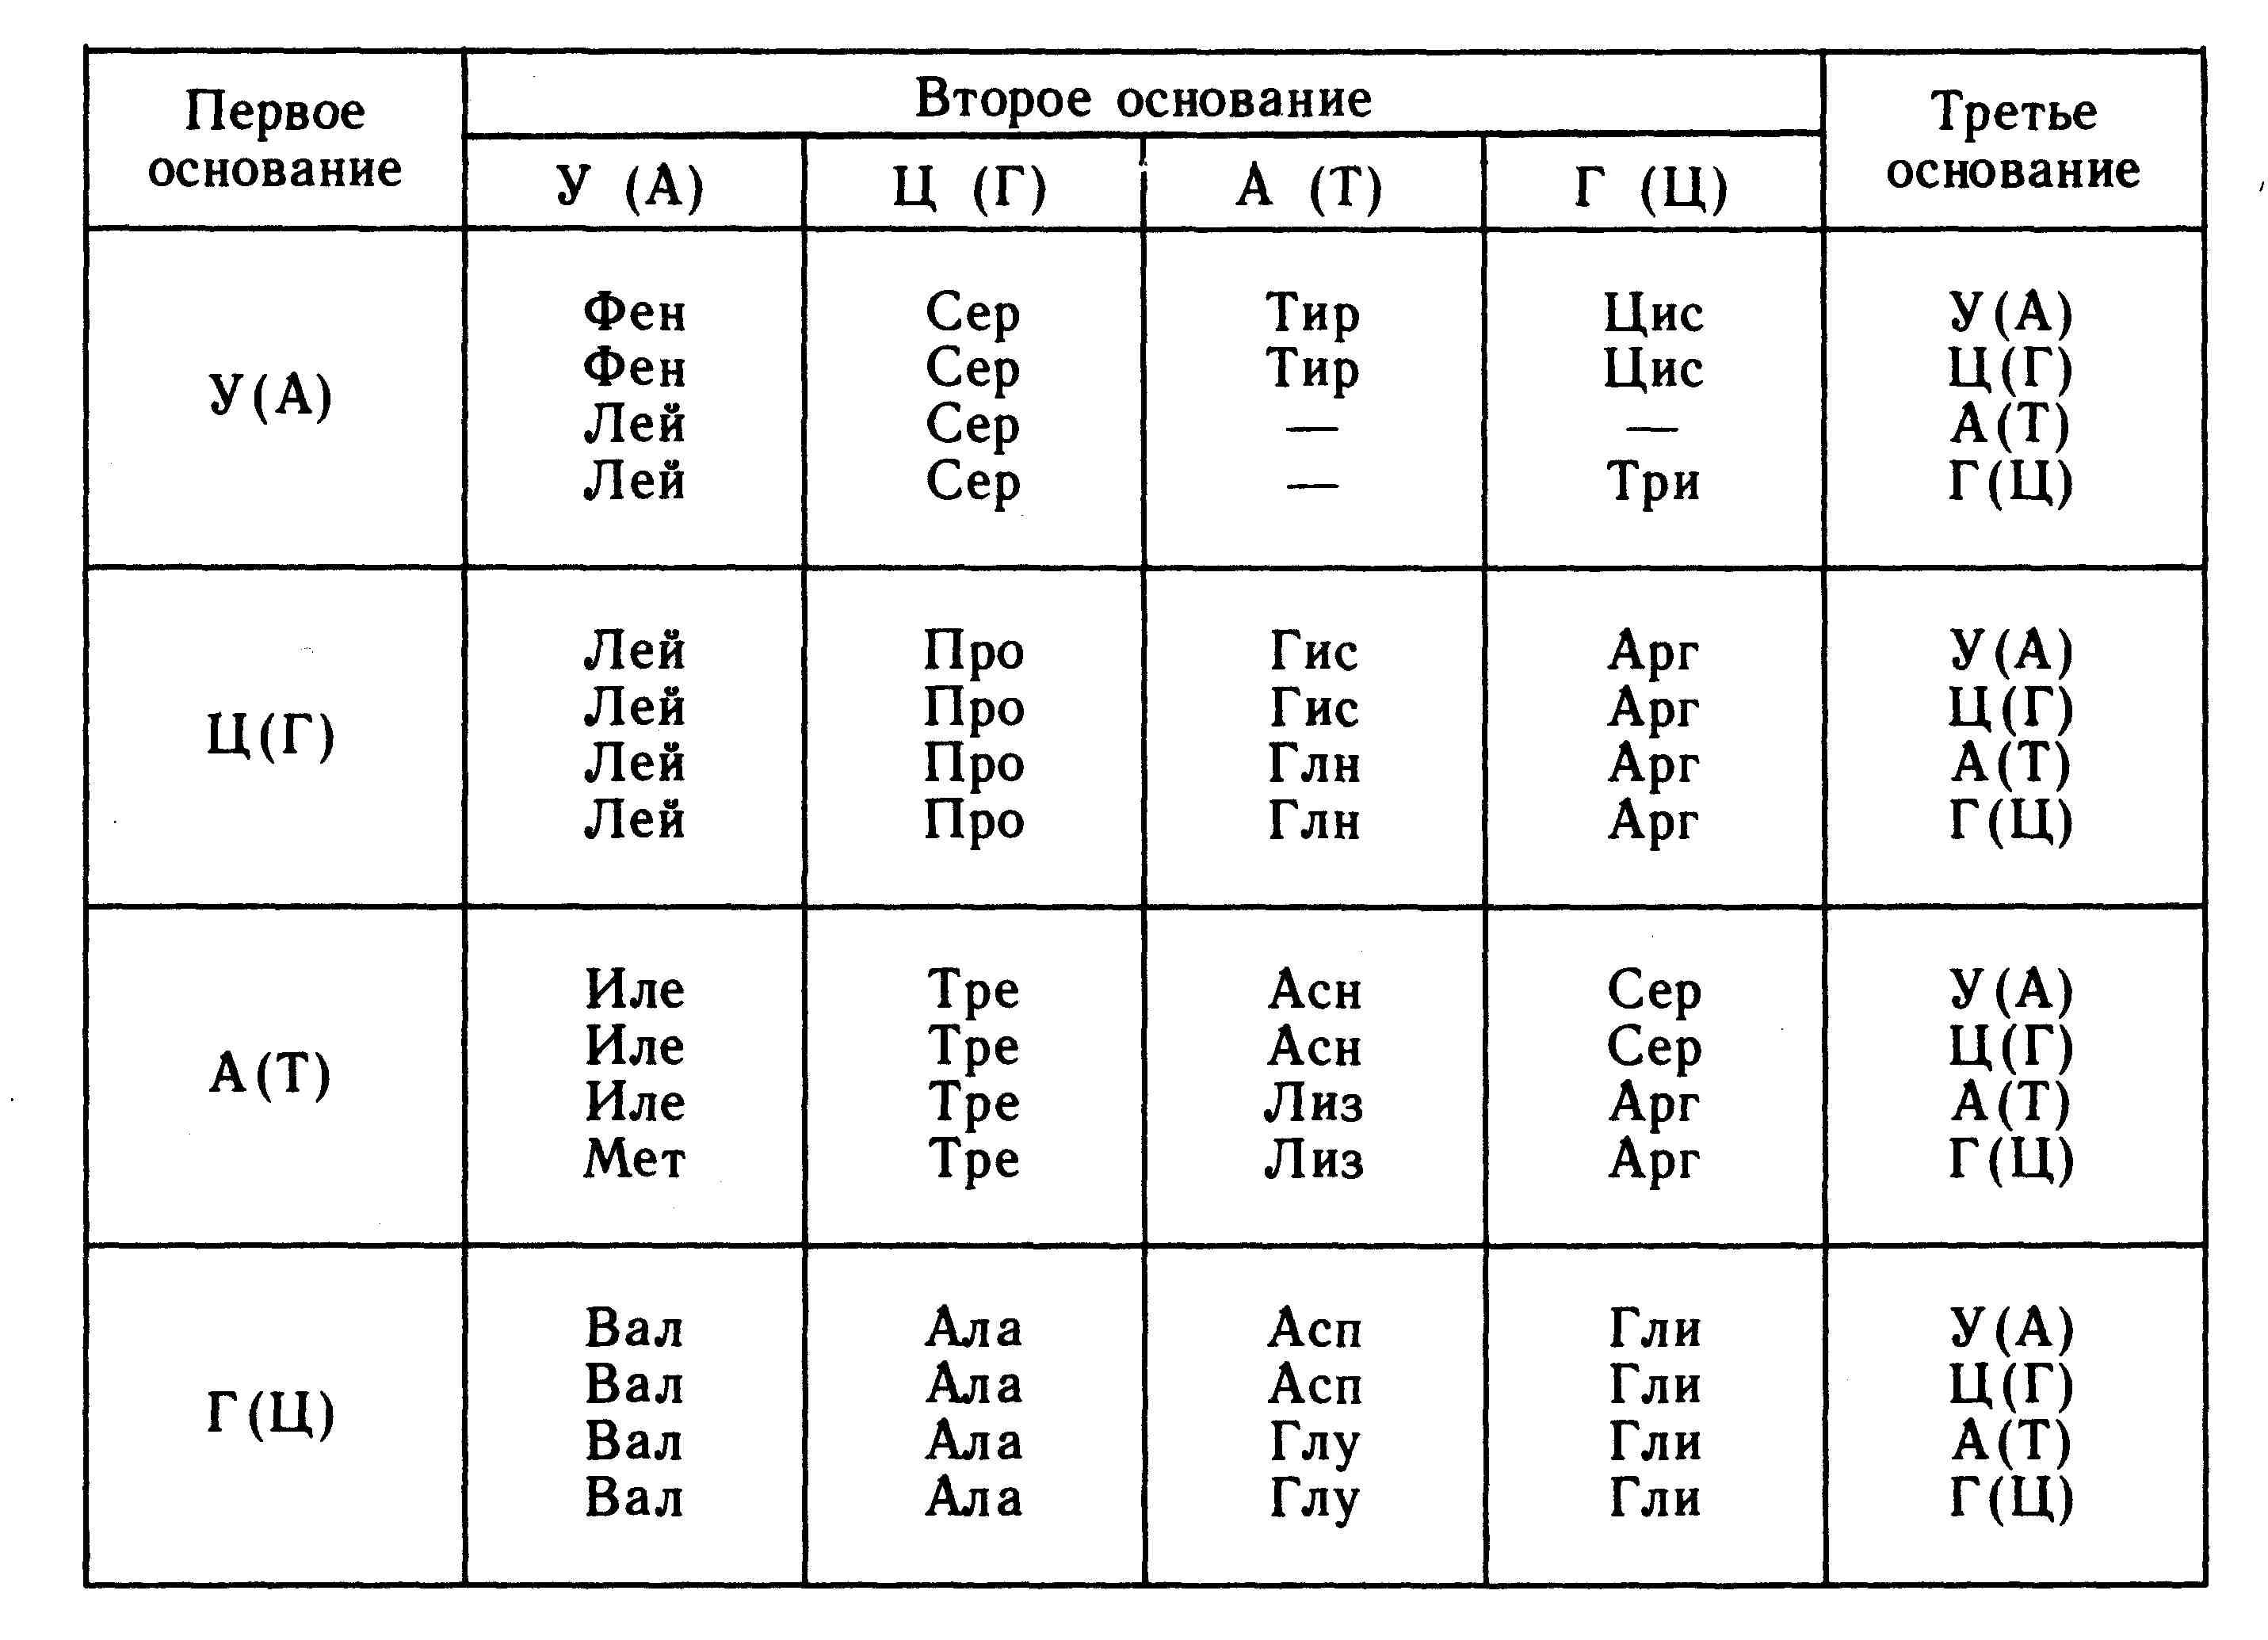 Ггц рнк. Таблица генетического кода ДНК И РНК. Аминокислоты ДНК И РНК таблица. Таблица РНК аминокислот. Таблица триплетов генетического кода и РНК.